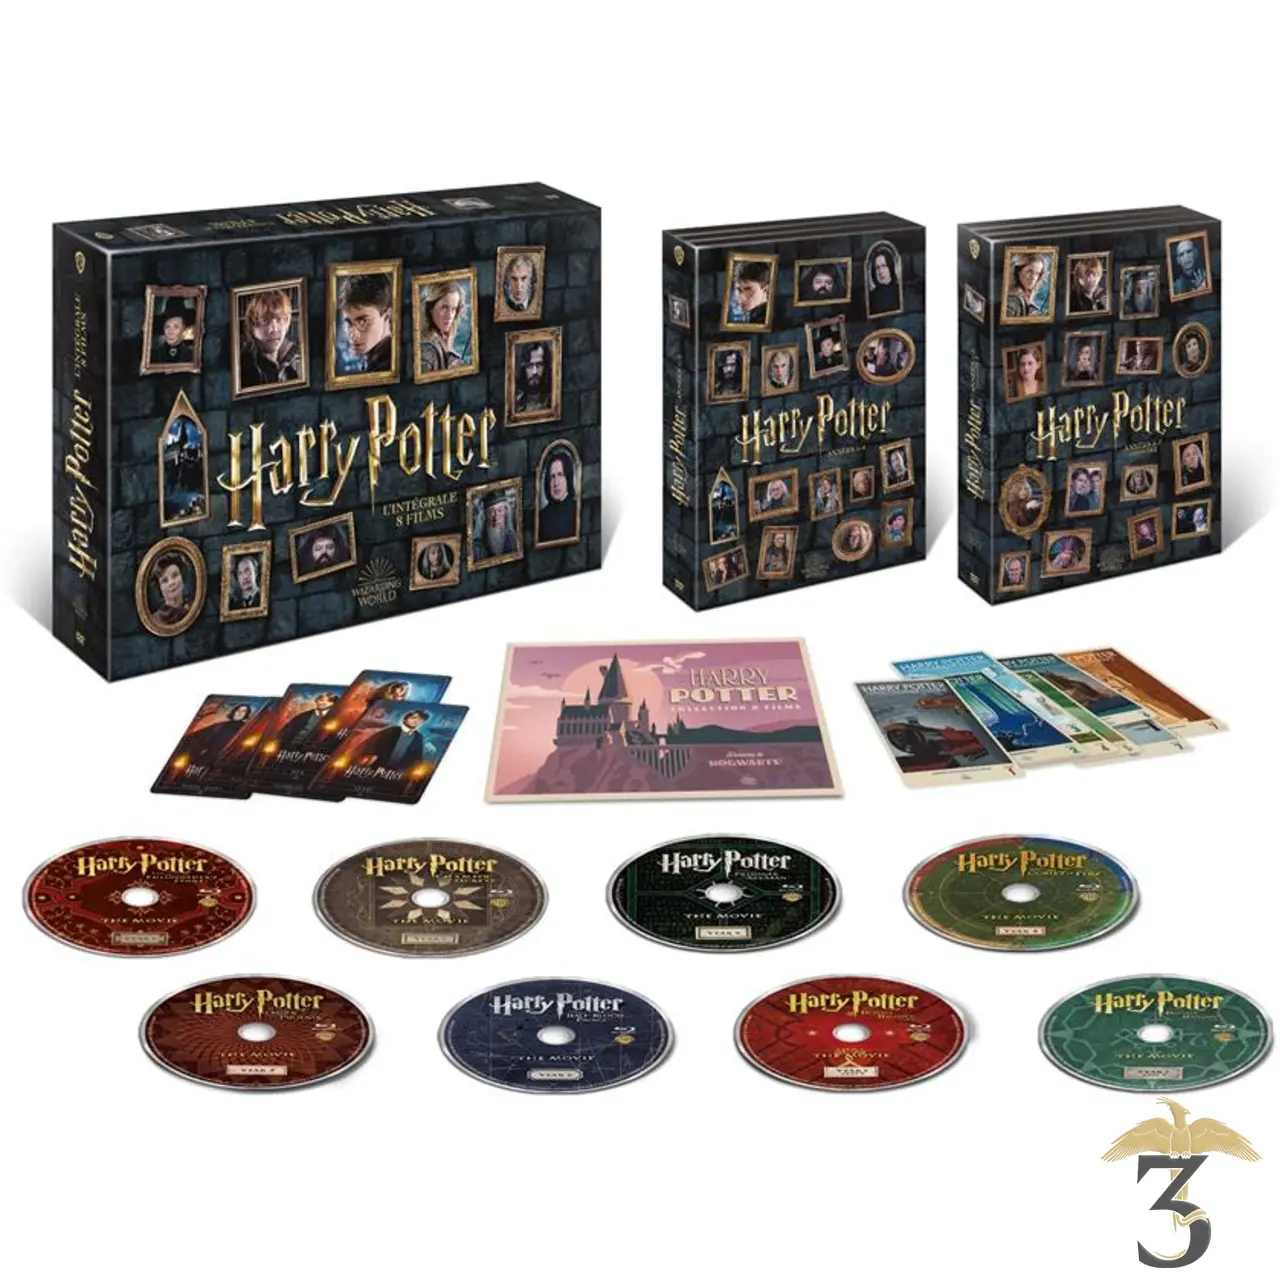 DVDFr - Harry Potter - L'intégrale des 8 films (Retour à Poudlard) - Blu-ray